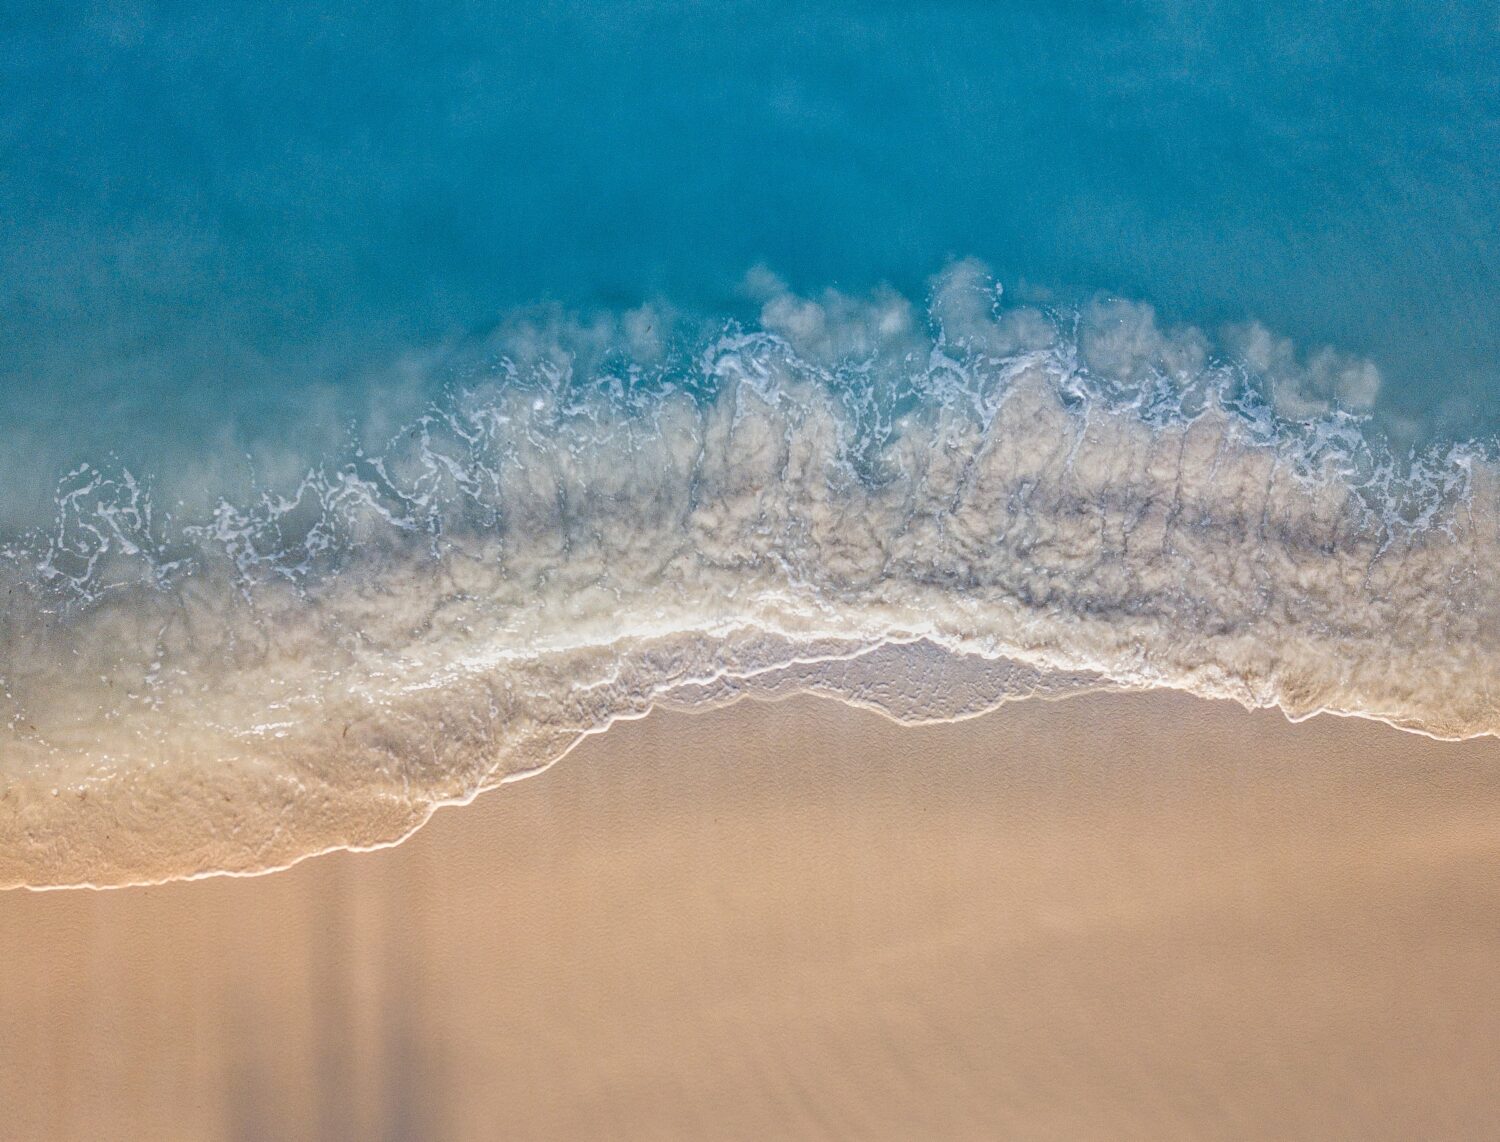 Mar azul turquesa, ondas quebrando com espuma branca, e areia dourada em praia de Aruba, ilustrando o post de chip de celular para Aruba